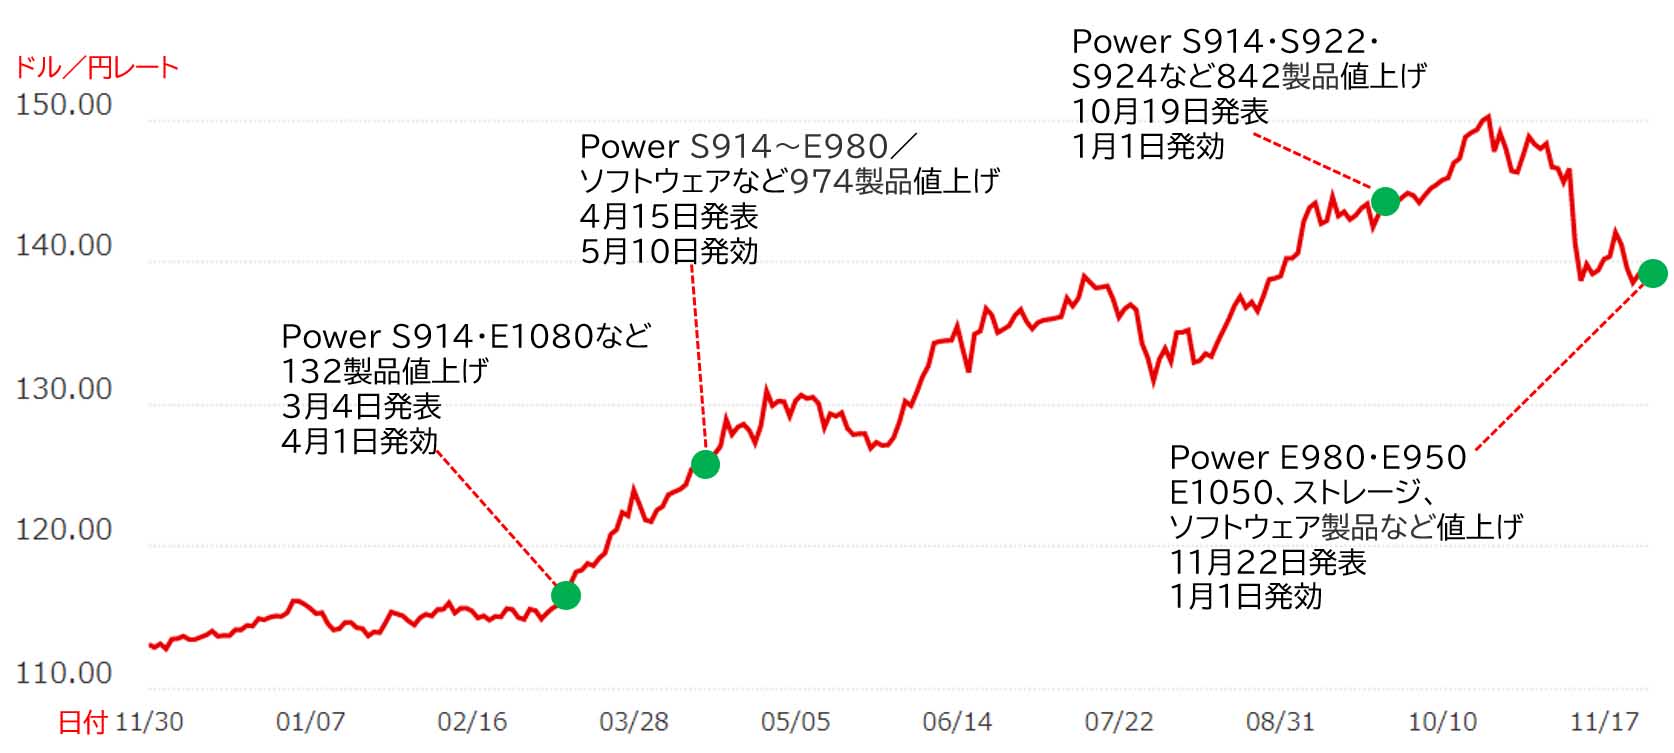 ドル・円為替レートの変動とPower関連製品の値上げ